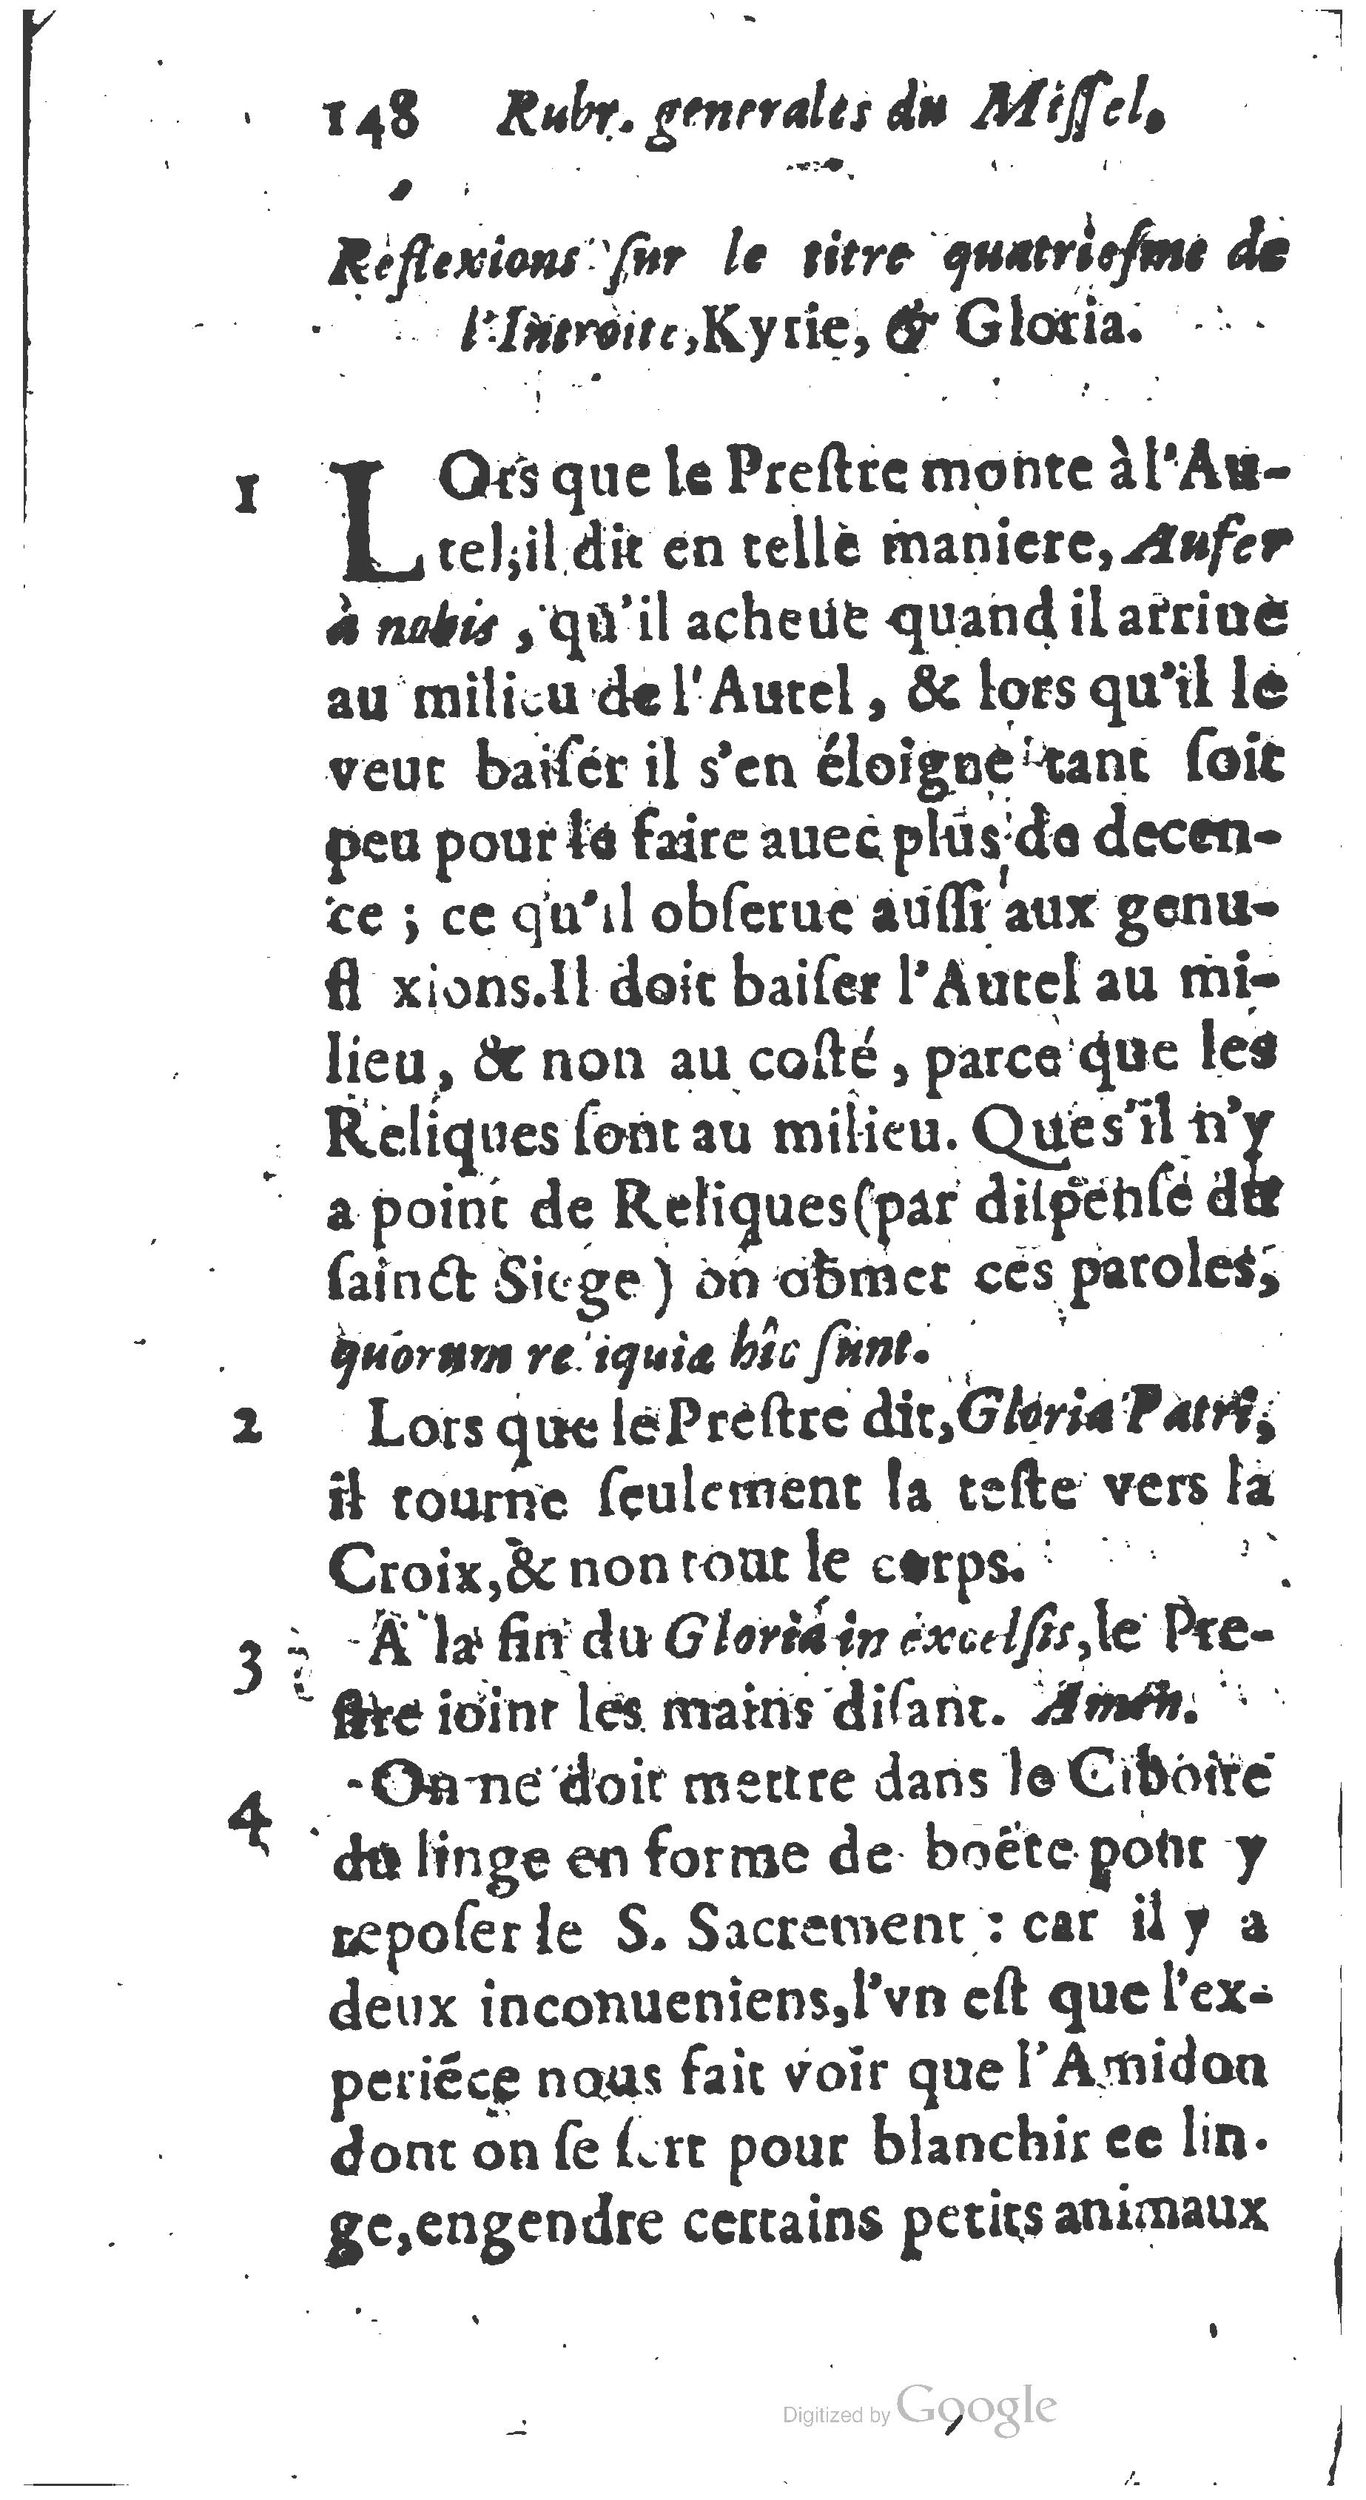 1651 Abrégé du trésor des cérémonies ecclésiastiques Guillermet_BM Lyon_Page_167.jpg